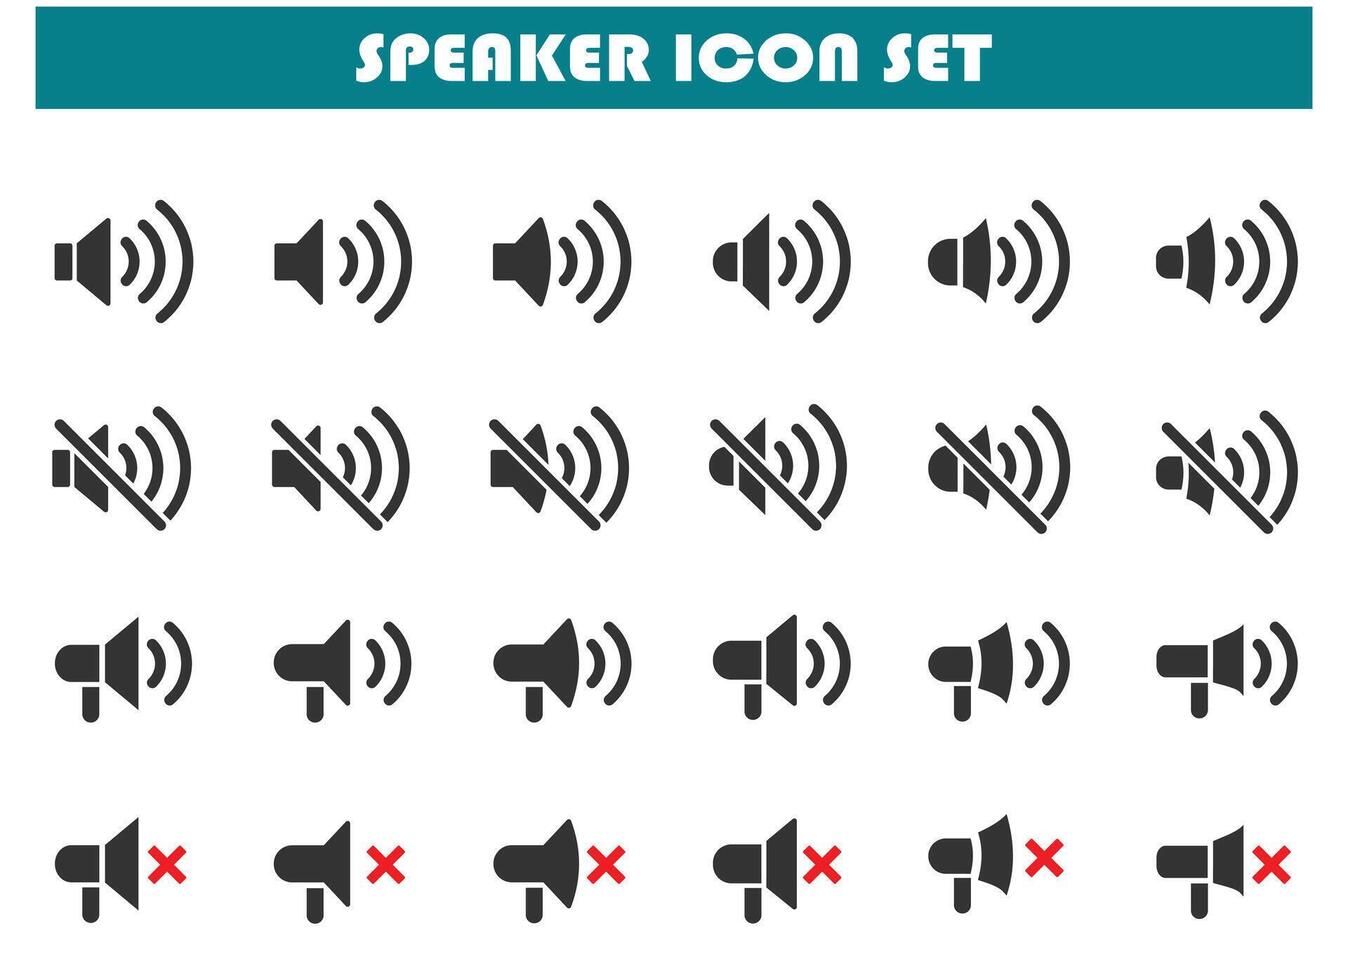 Speaker icon set vector